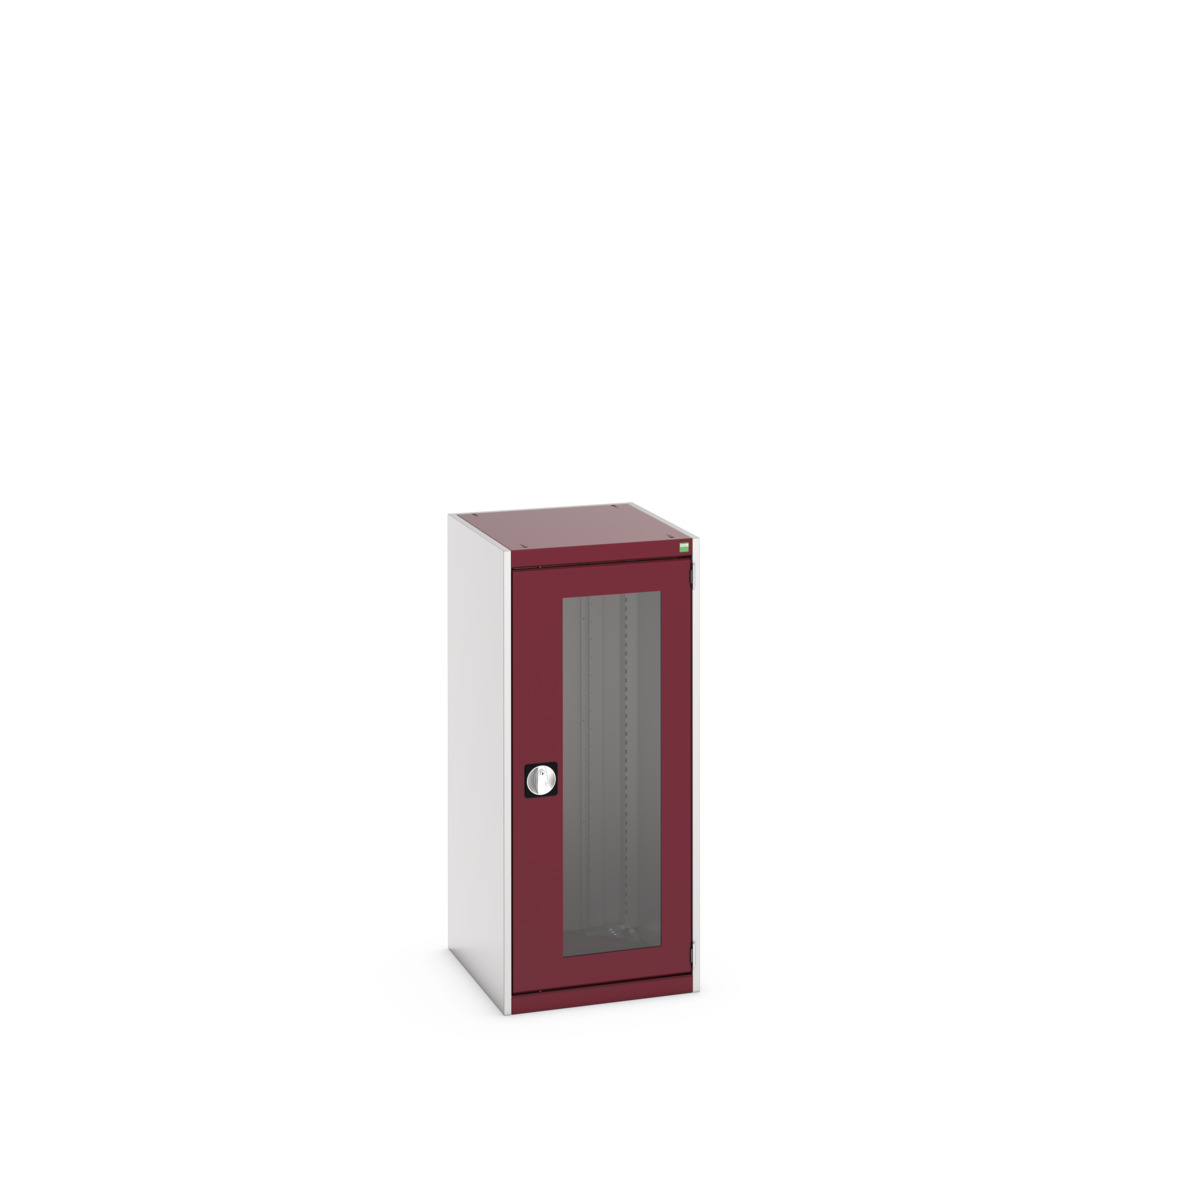 40018140.24V - cubio cupboard